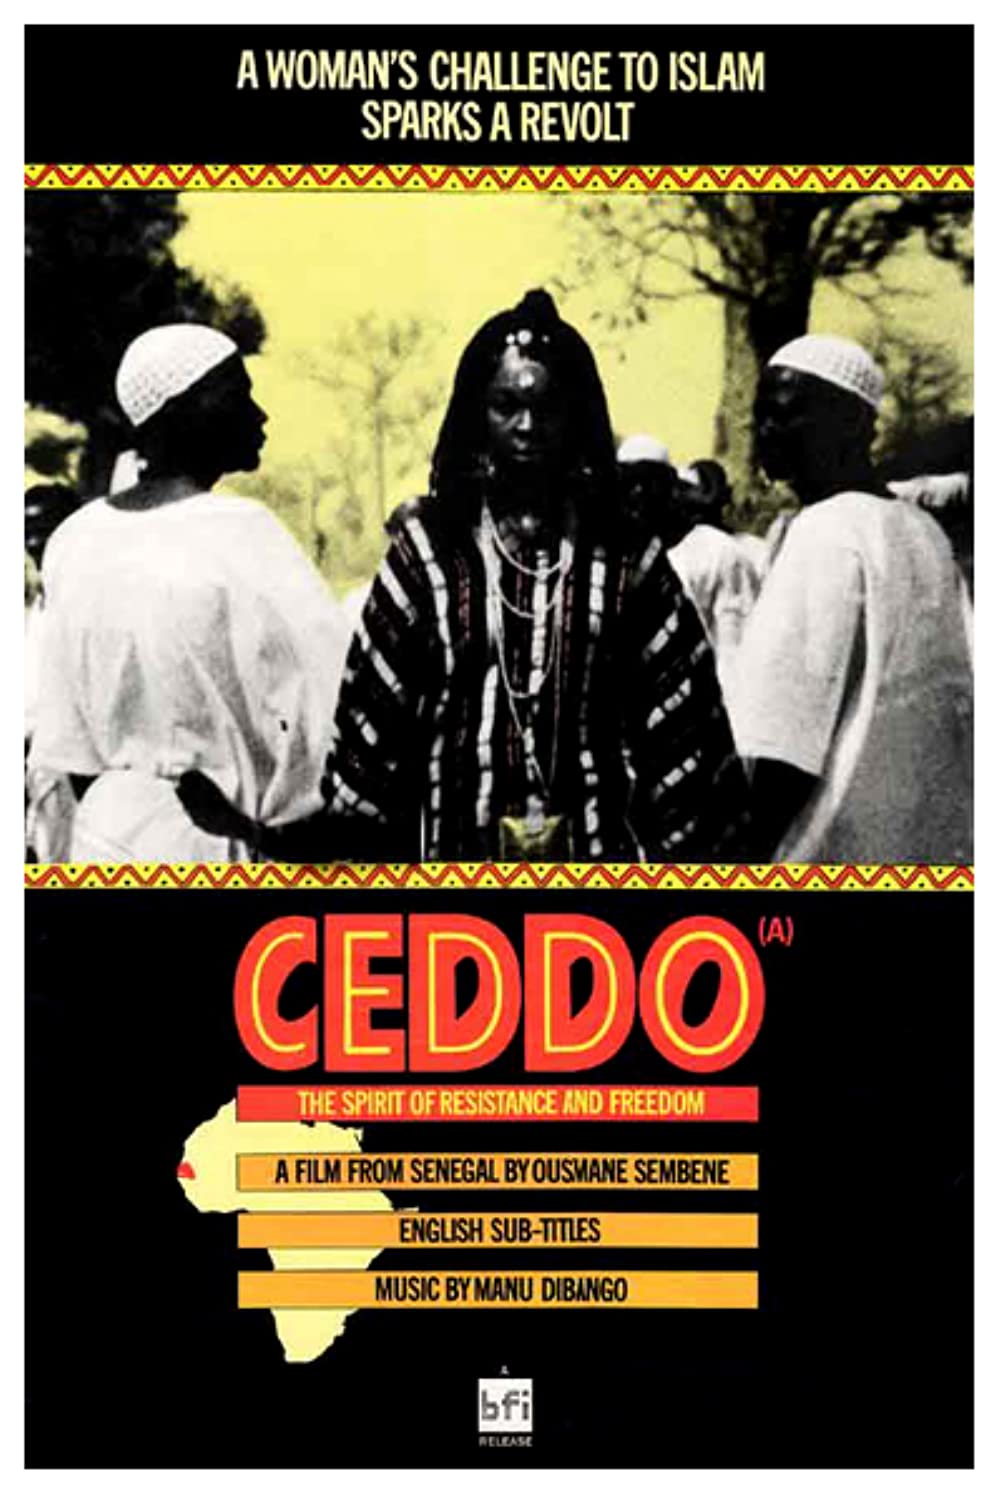 Filmbeschreibung zu Ceddo